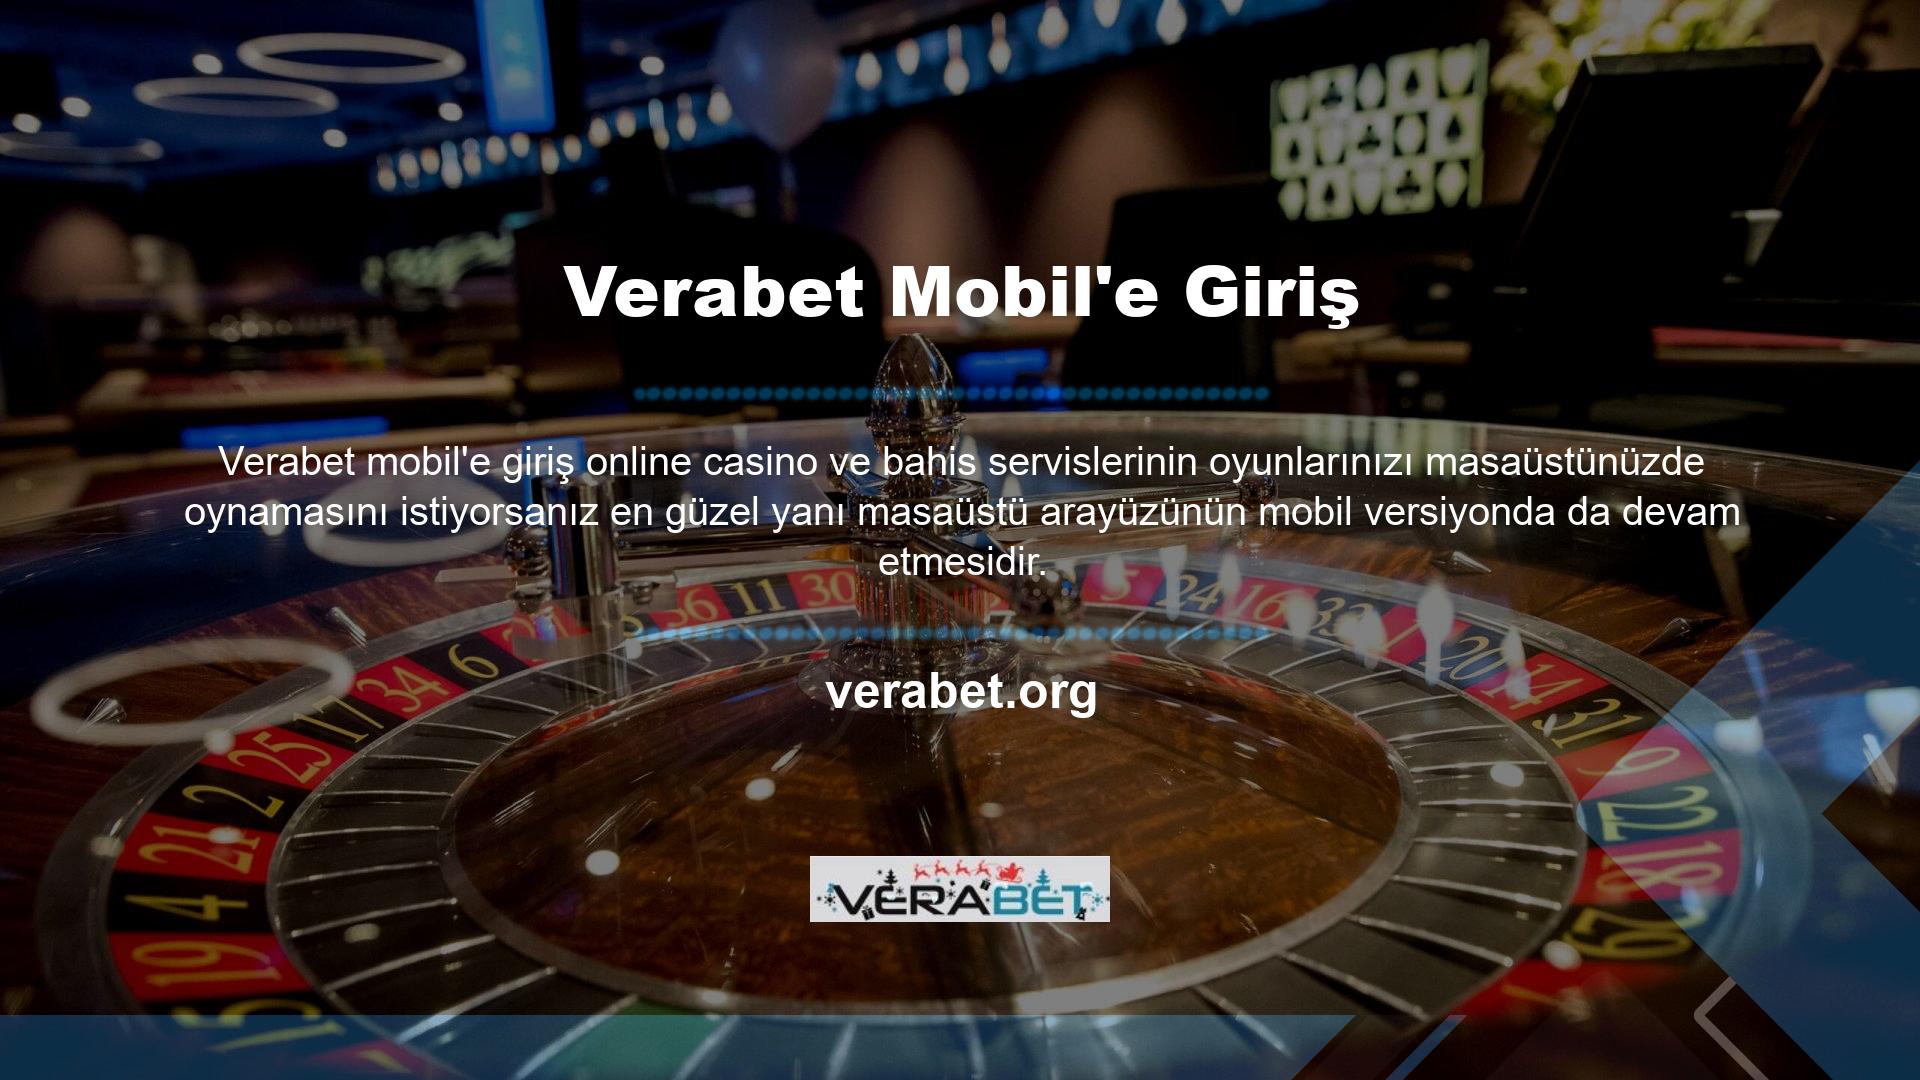 Verabet Mobil'e üye olarak sitenizin anlaşılır yapısını kontrol edebilirsiniz